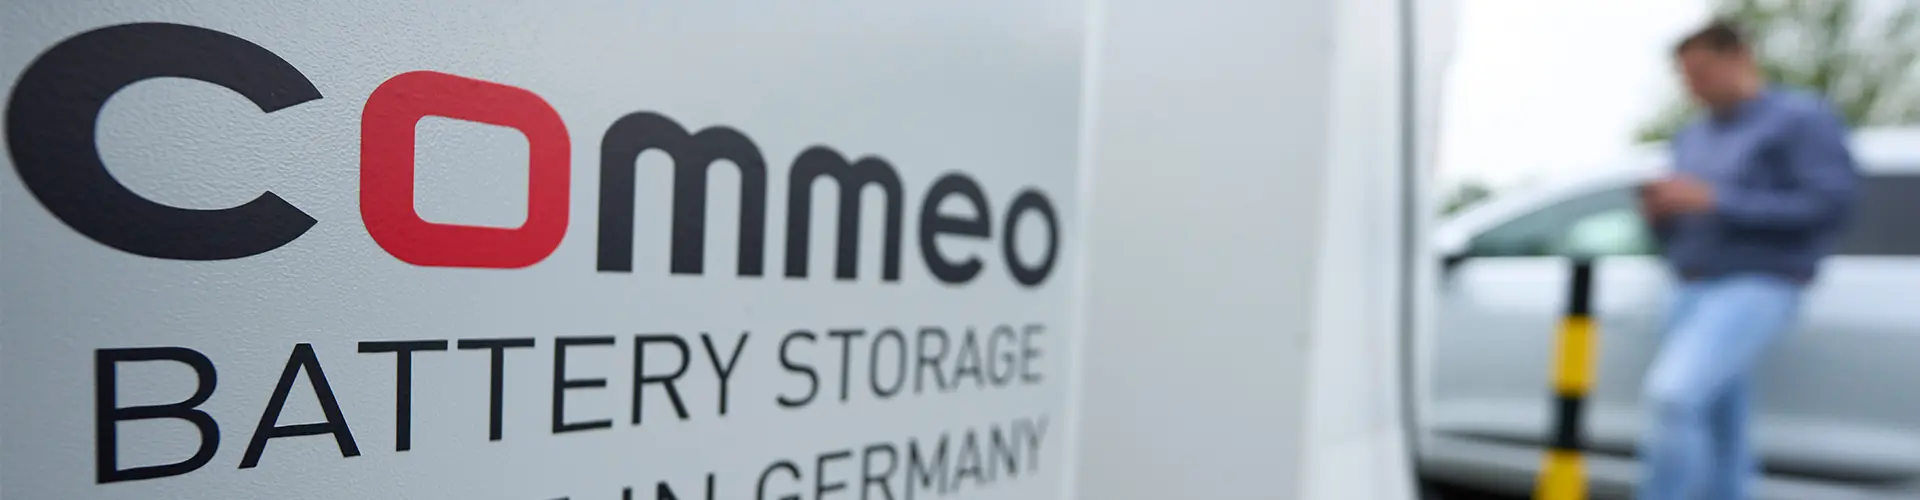 Das Bild präsentiert einen Commeo Batteriespeicher mit der Aufschrift "Commeo Battery Storage - Hergestellt in Deutschland". Im Hintergrund ist ein Herr zu erkennen, der sein Elektrofahrzeug lädt.